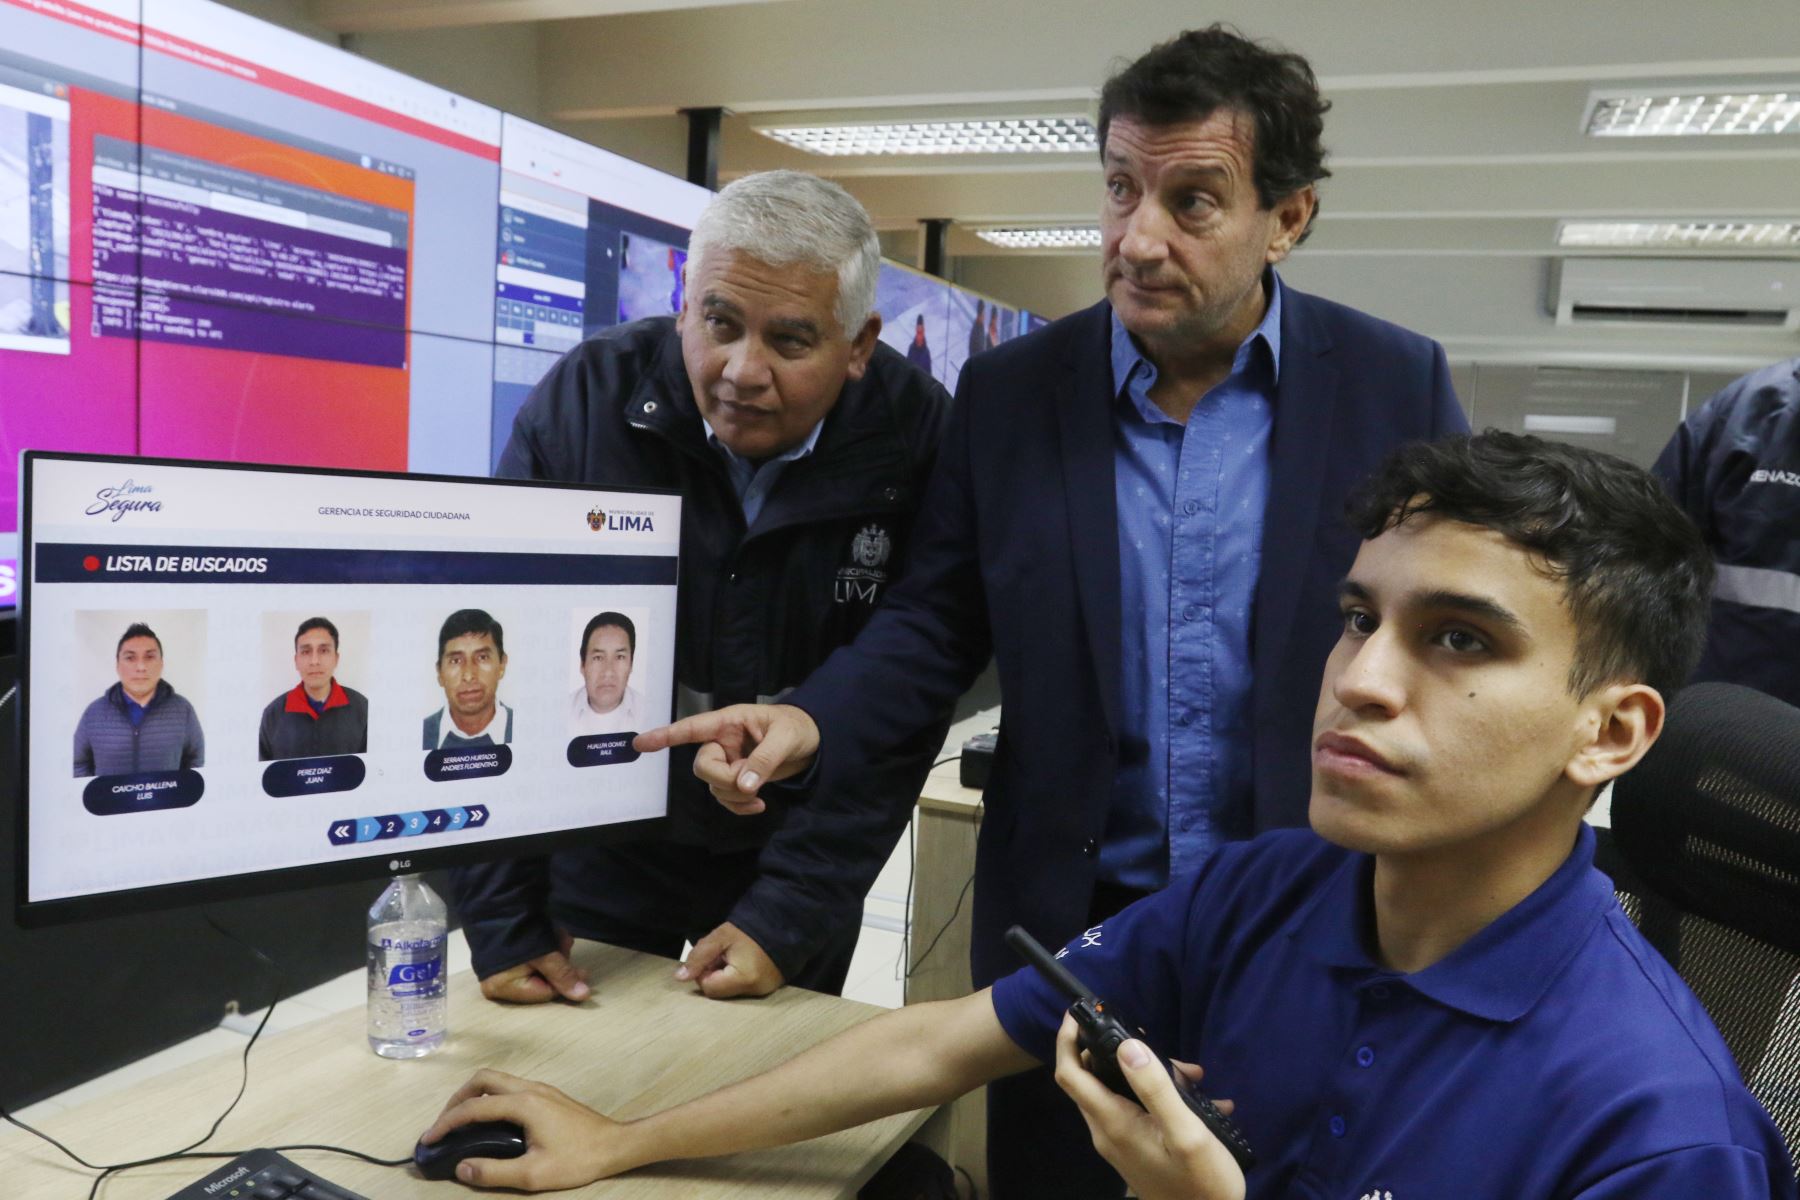 Municipalidad de Lima presenta Plataforma de IA para identificación de rostros en la lucha contra la inseguridad ciudadana.
Foto: ANDINA/Héctor Vinces